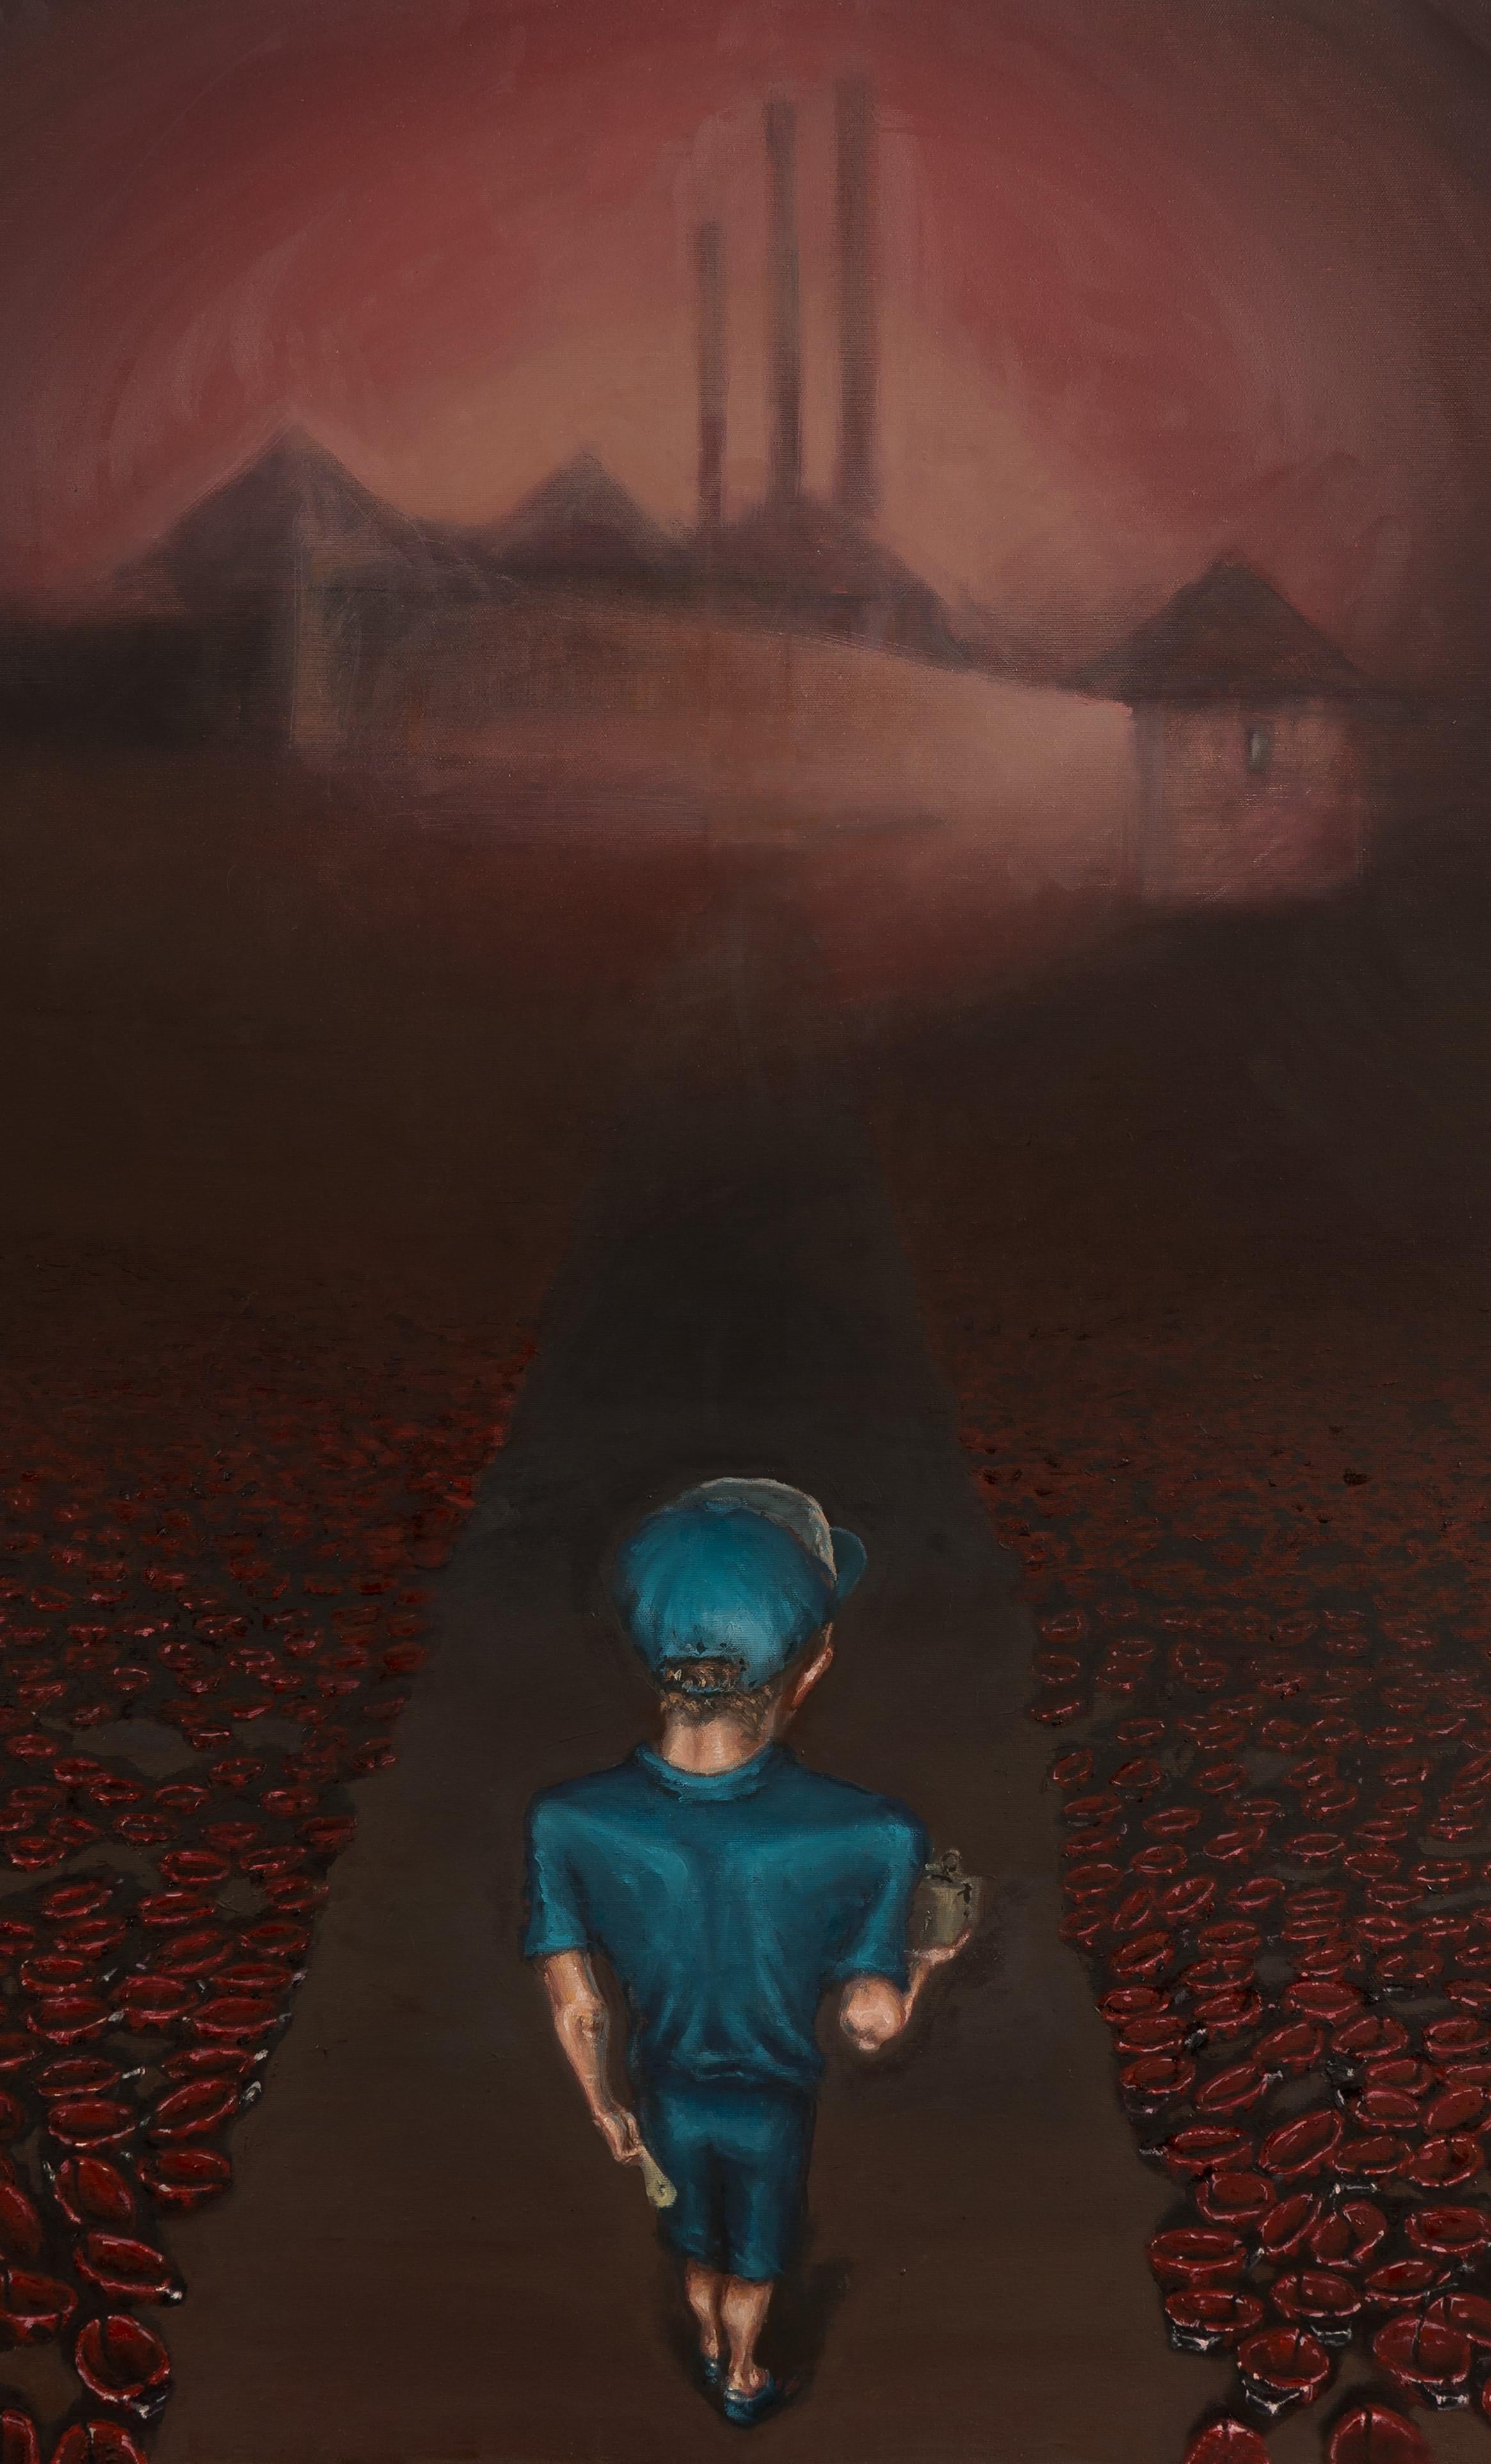 The Straight Path - Zeitgenössisch, Kind, Blau, Mystery, Ladybug, Rot, Braun – Painting von Mihai Florea